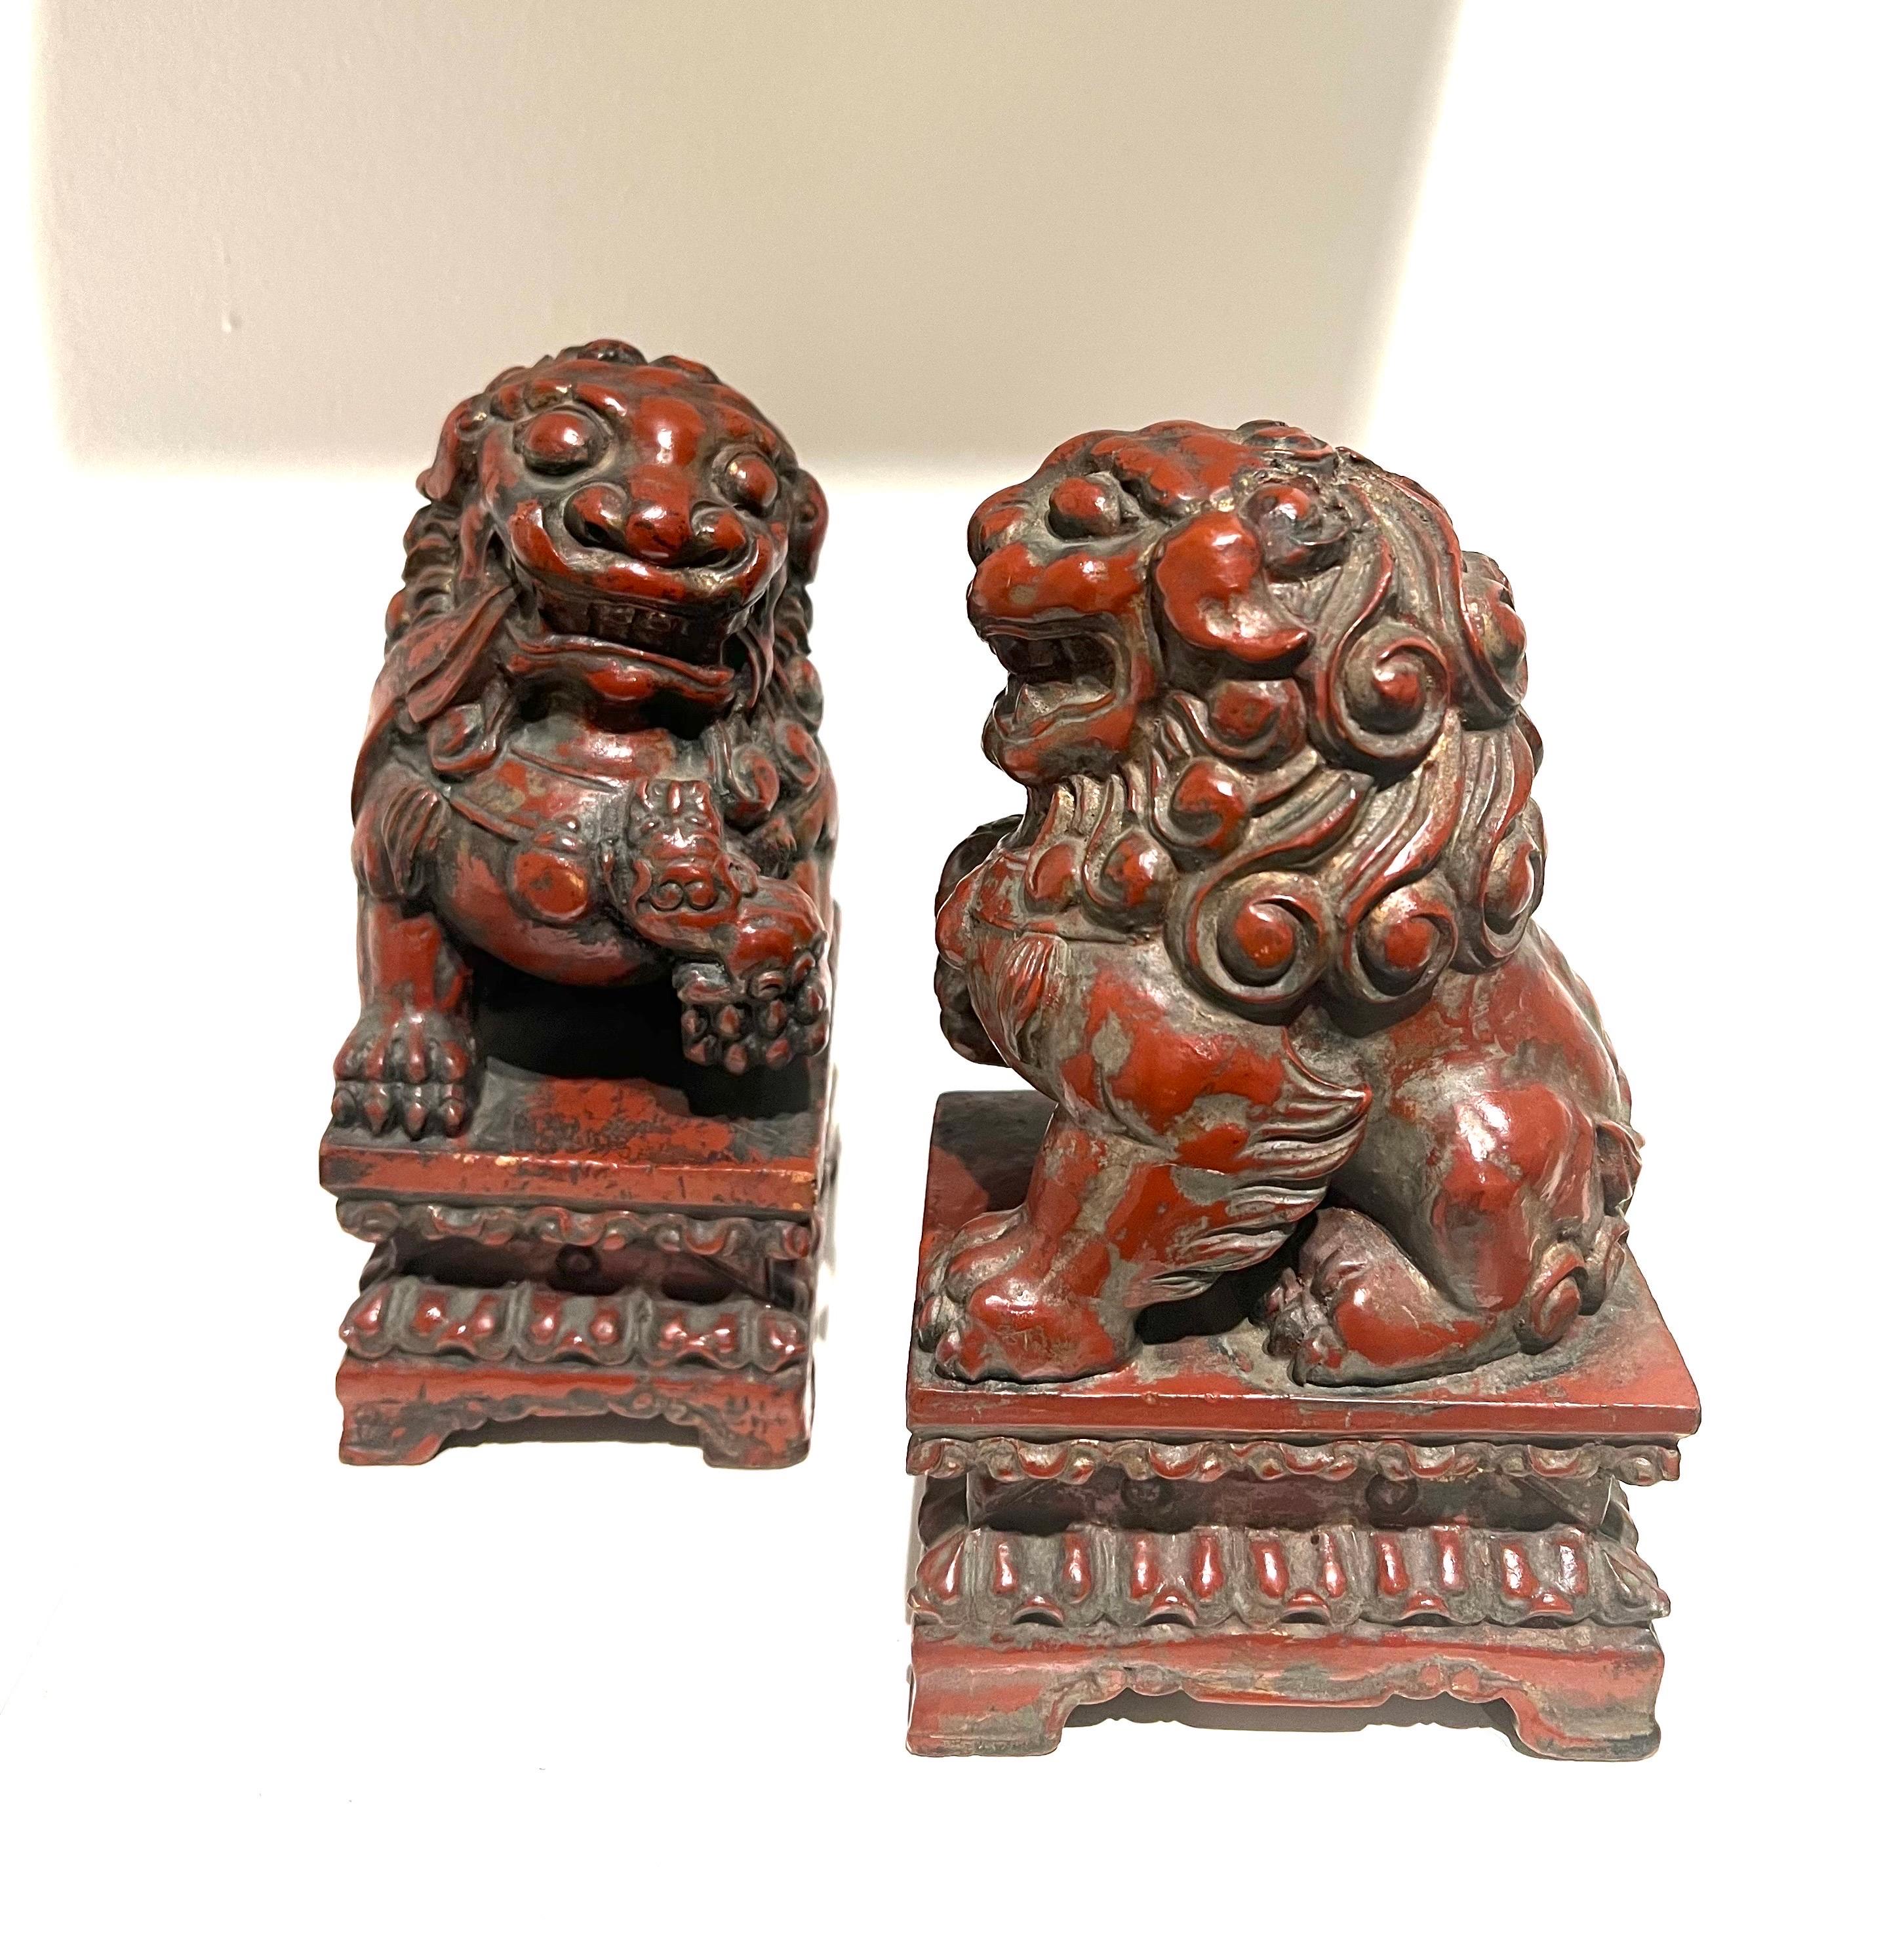 Ein sehr schönes Paar von Vintage, rot lackiertem Holz geschnitzt foo Hunde aus Japan. Hervorragender Zustand und Patina; ein tolles Deko-Objekt für jeden Raum!